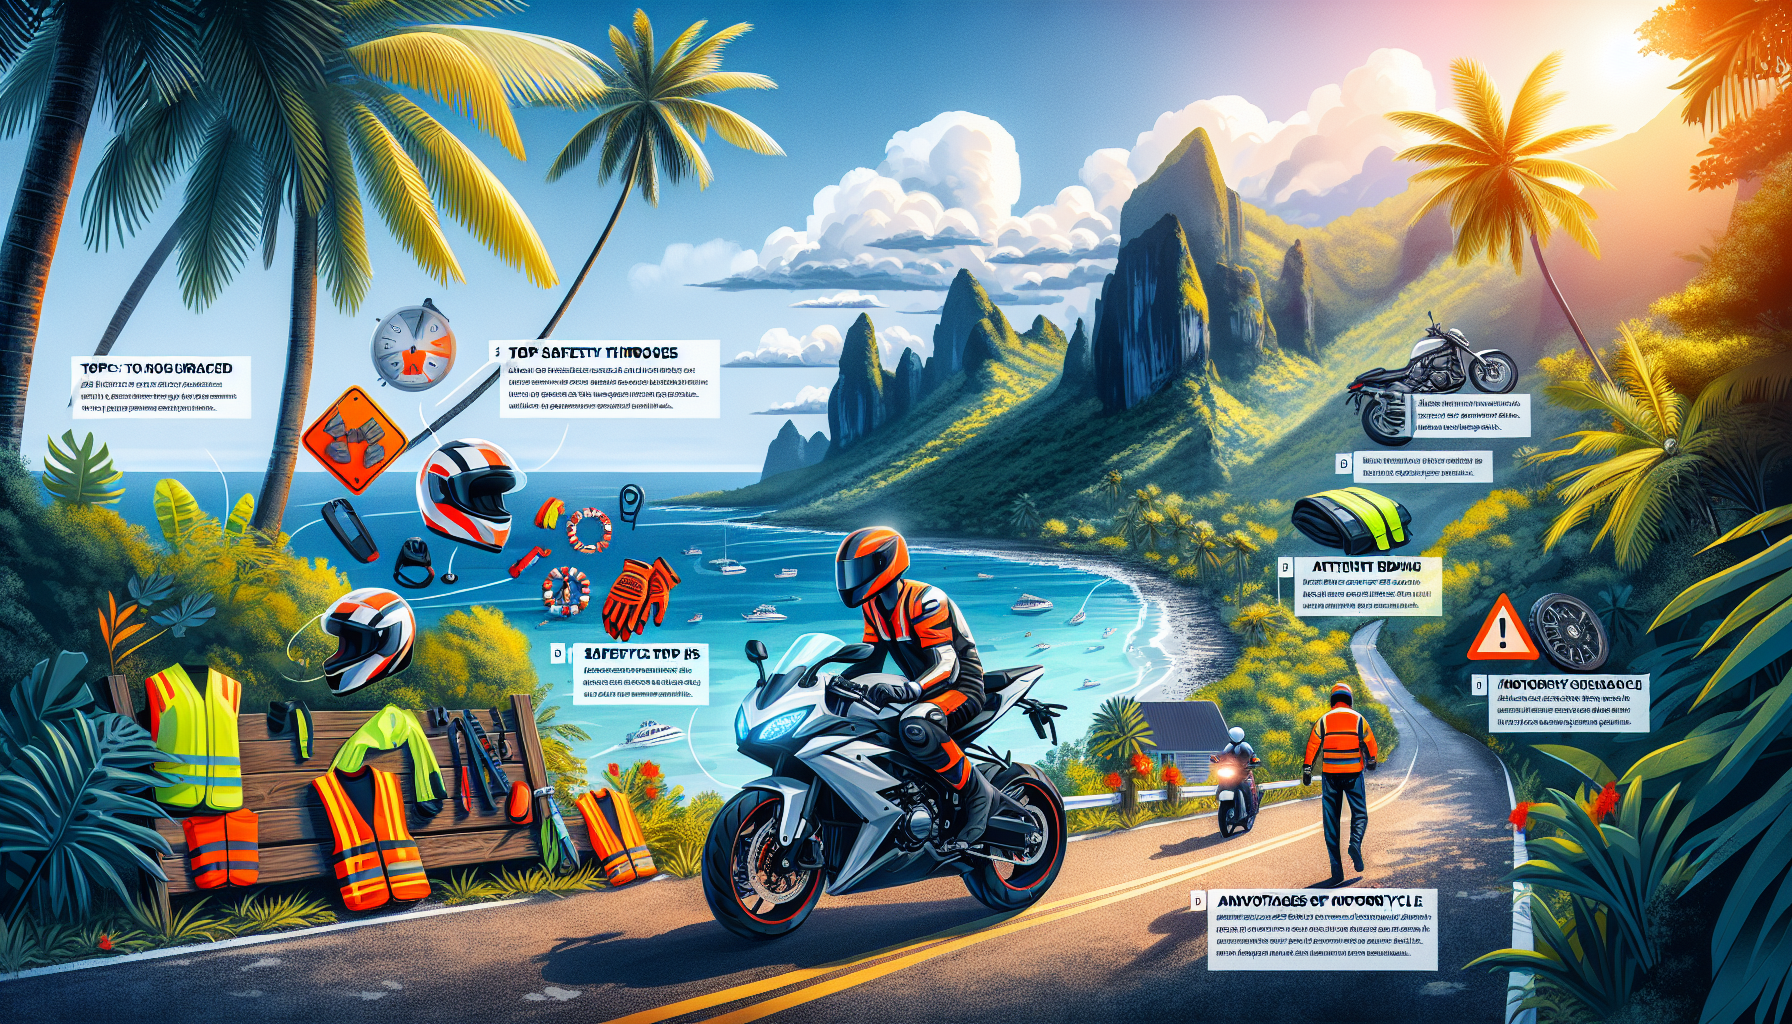 découvrez comment conduire en toute sécurité avec une assurance moto à la réunion pour profiter pleinement de votre expérience de conduite sur l'île.